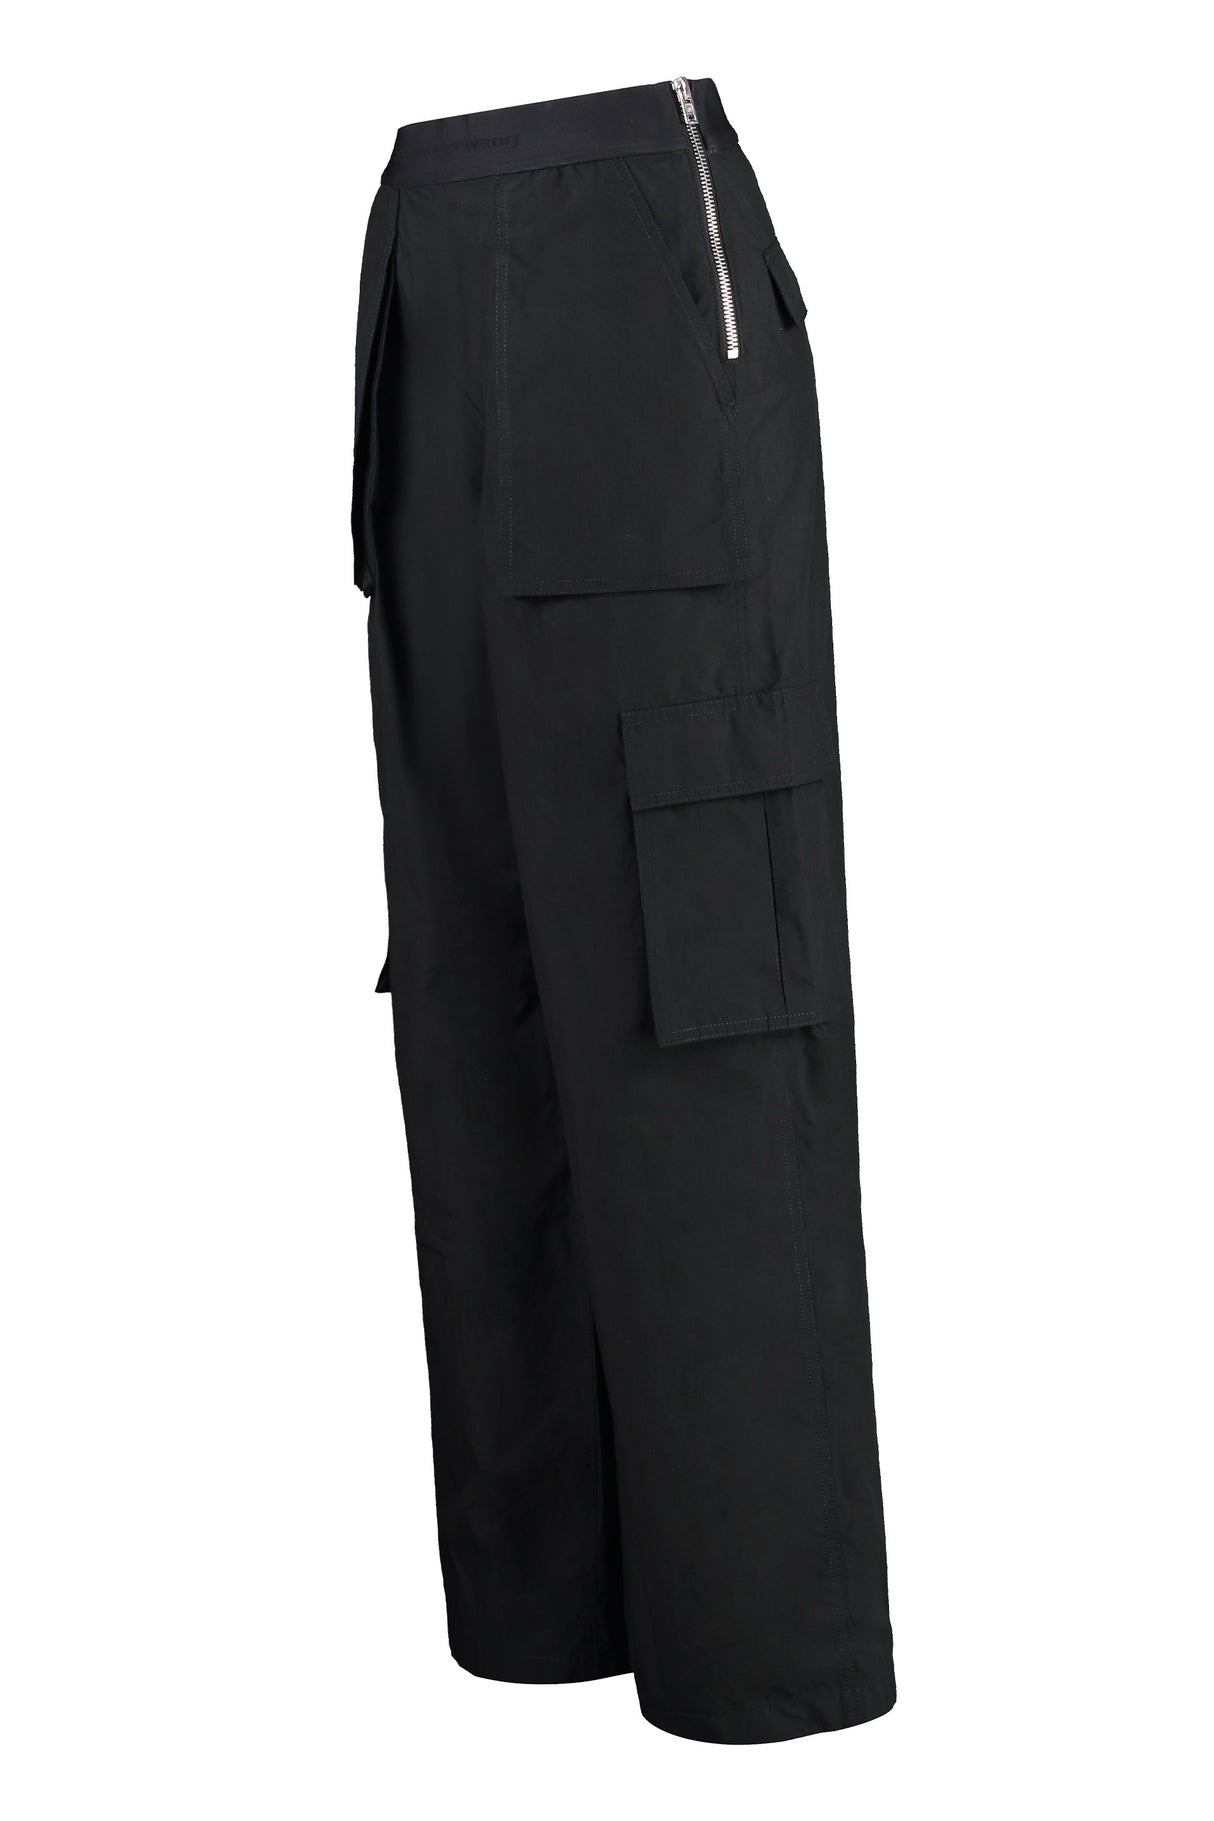 女性專用時尚黑色尼龍技術長褲